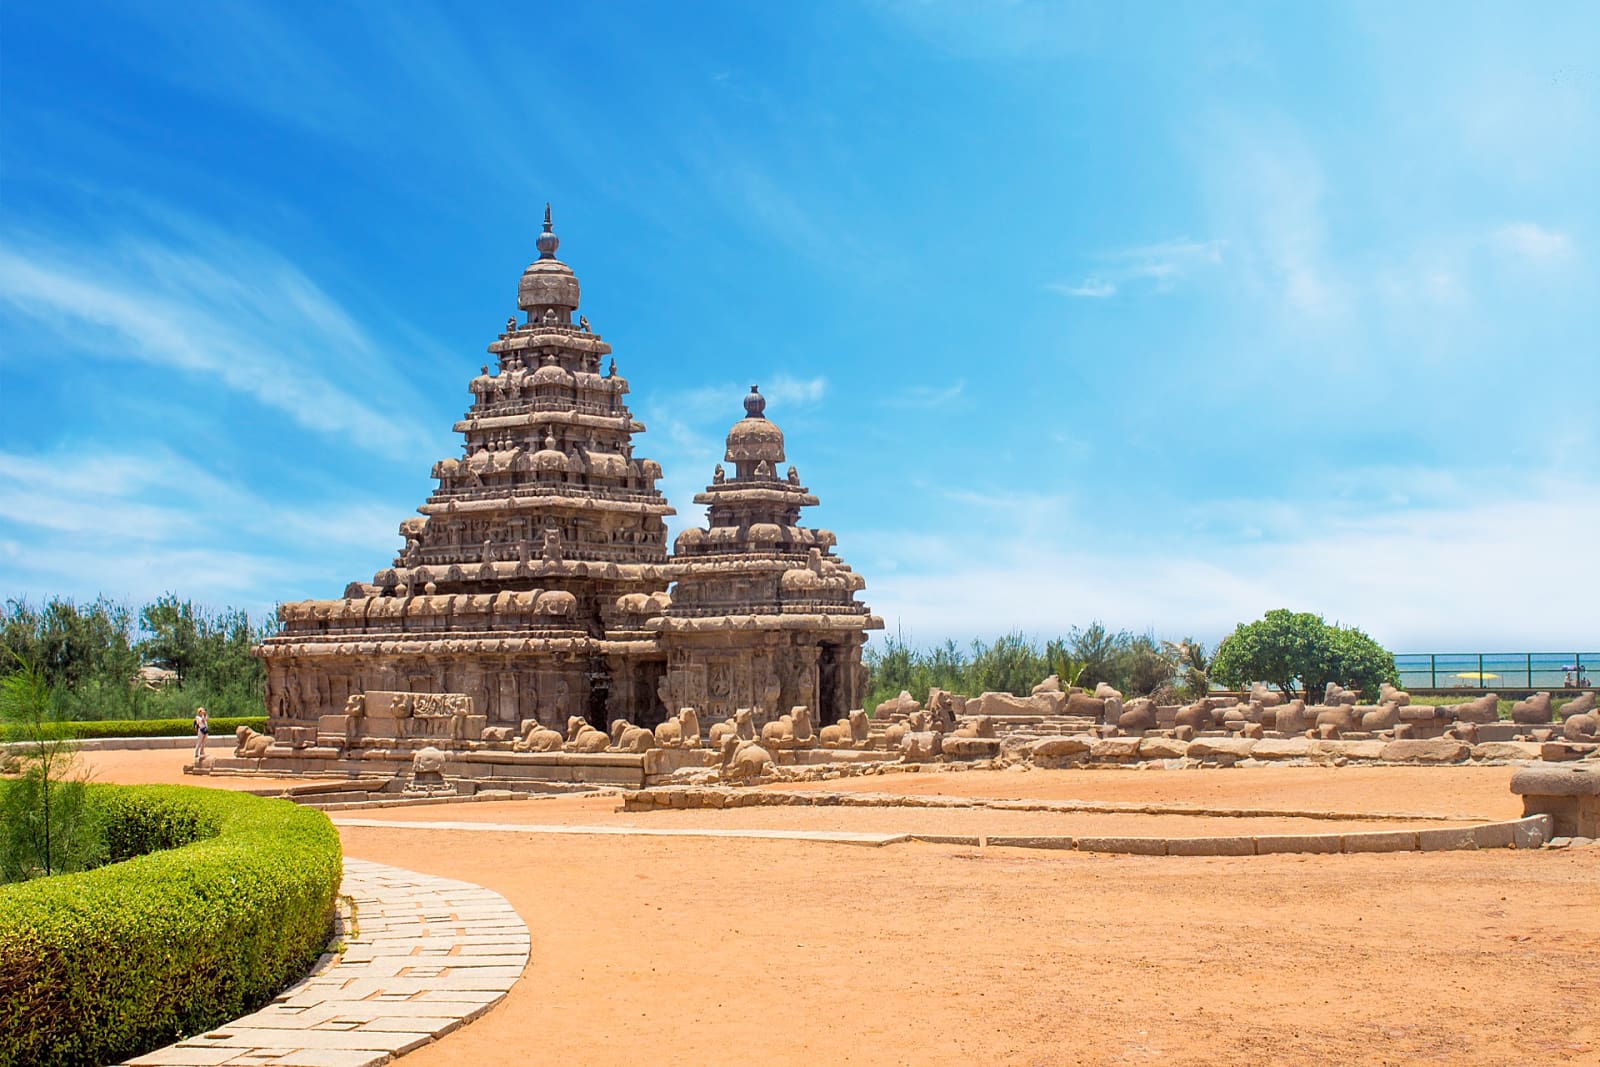 Shore temple, Mahabalipuram